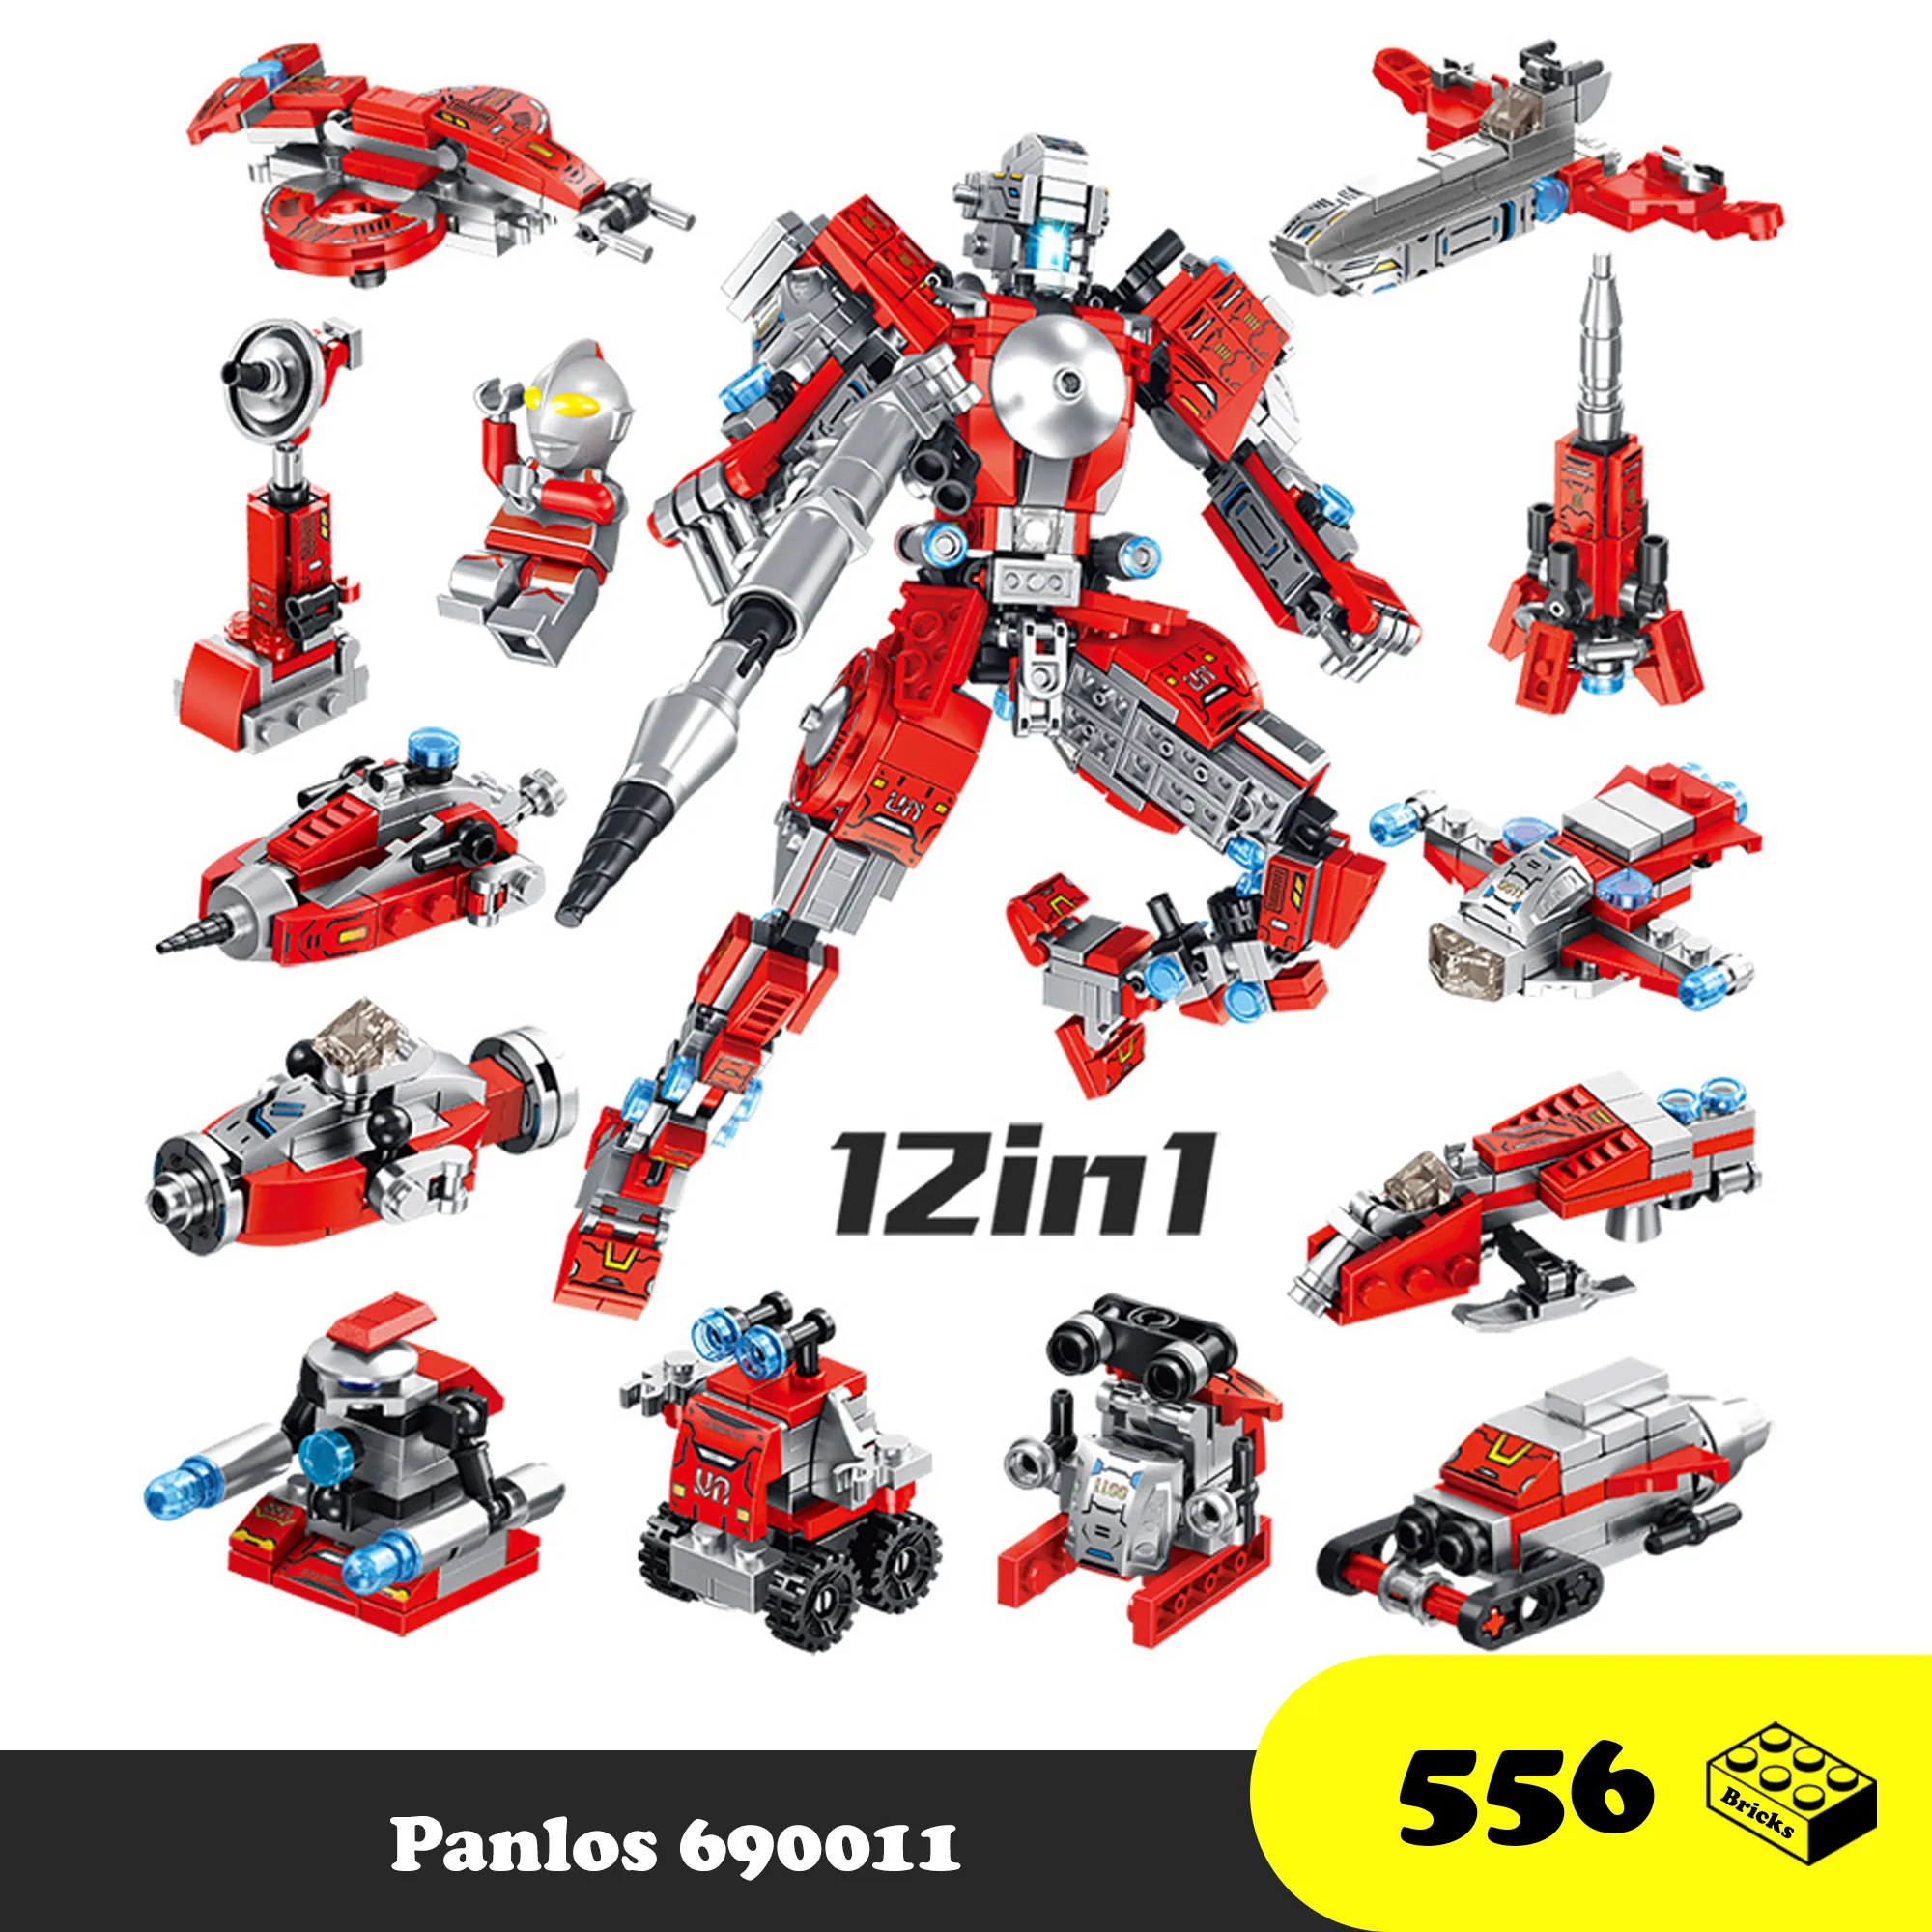 Lego lắp ráp robot siêu nhân điện quang - Lego Robot 12 in 1 Pan Luosi 690011 - Đồ chơi trí tuệ 556 mảnh ghép